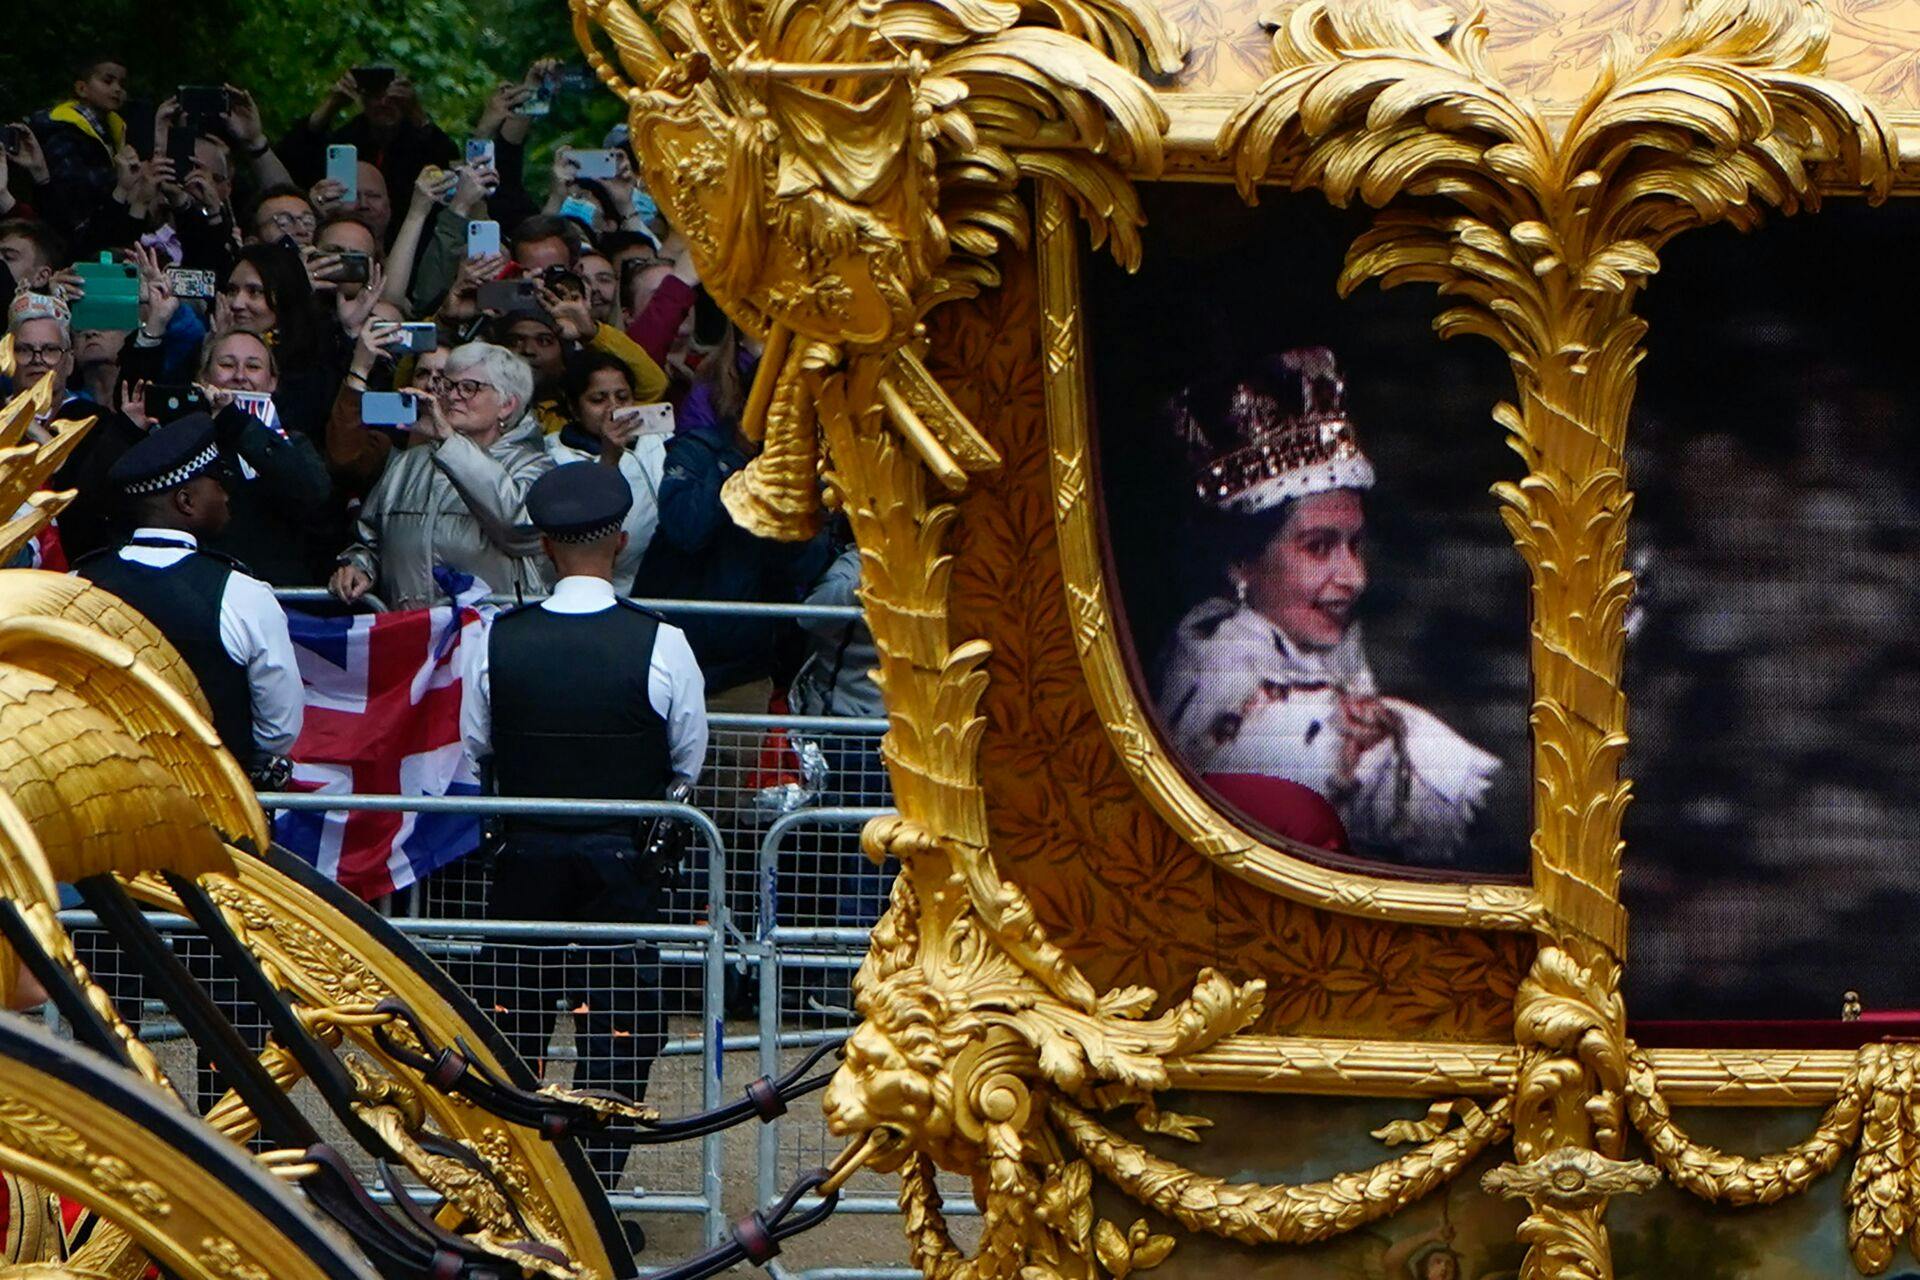 Guldkaraten var tom, da den sidst kørte gennem Londons gader i anledning af dronning Elizabeths jubilæum 5. juni 2022.
